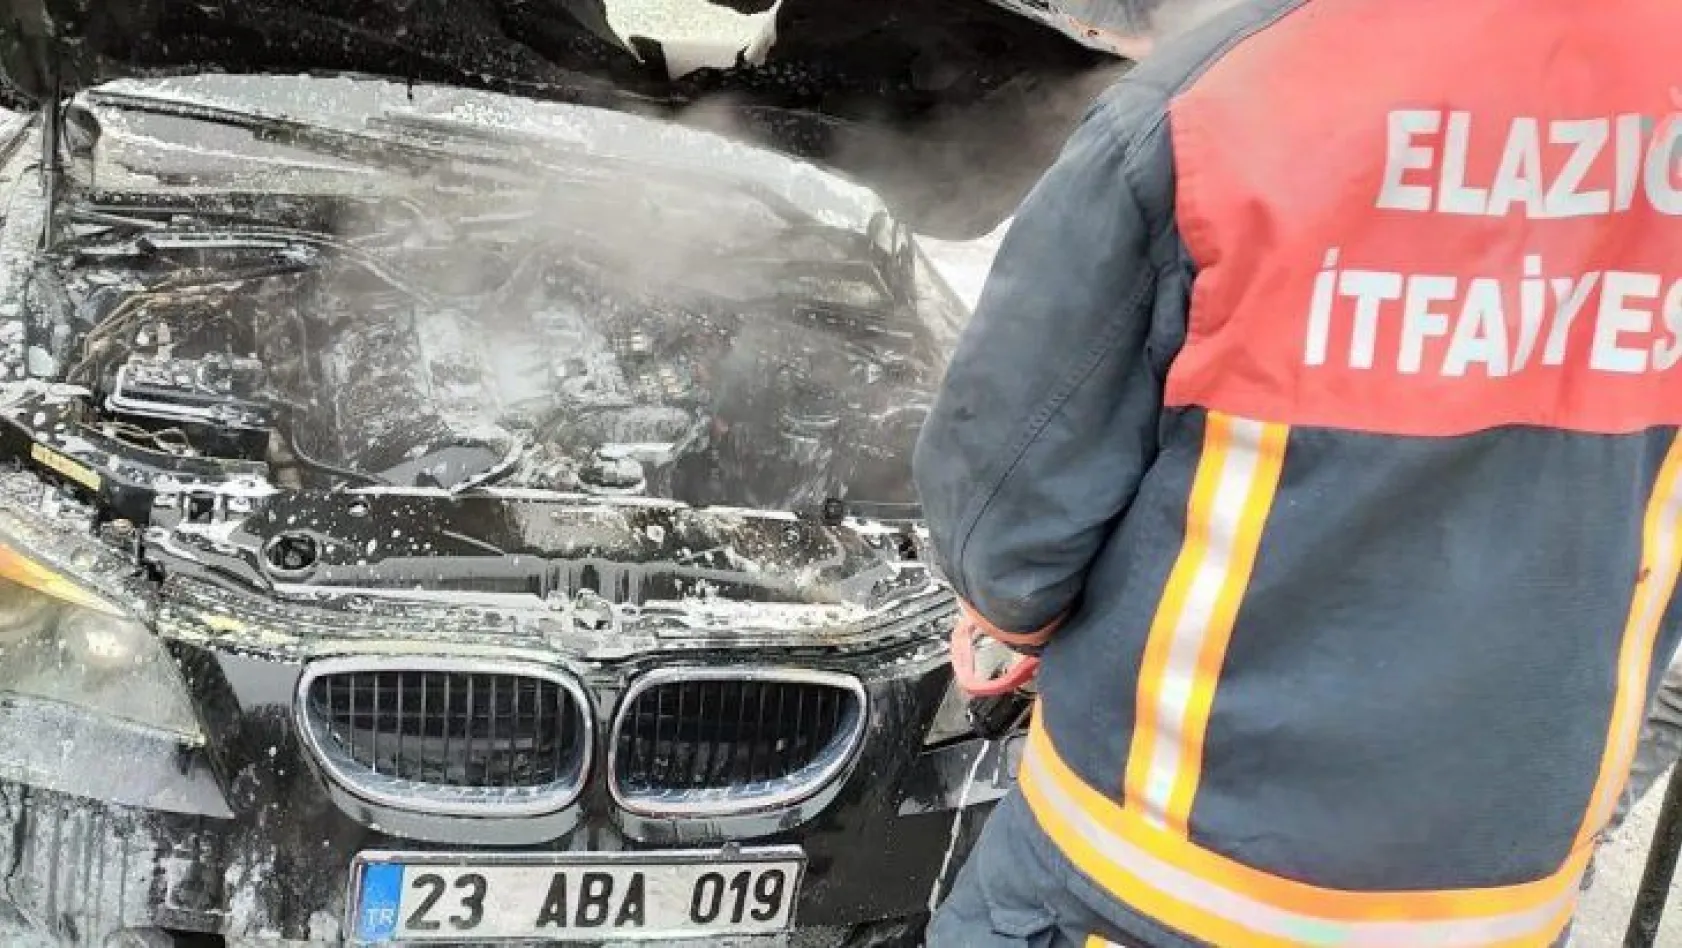 Elazığ'da park halindeki otomobil yandı